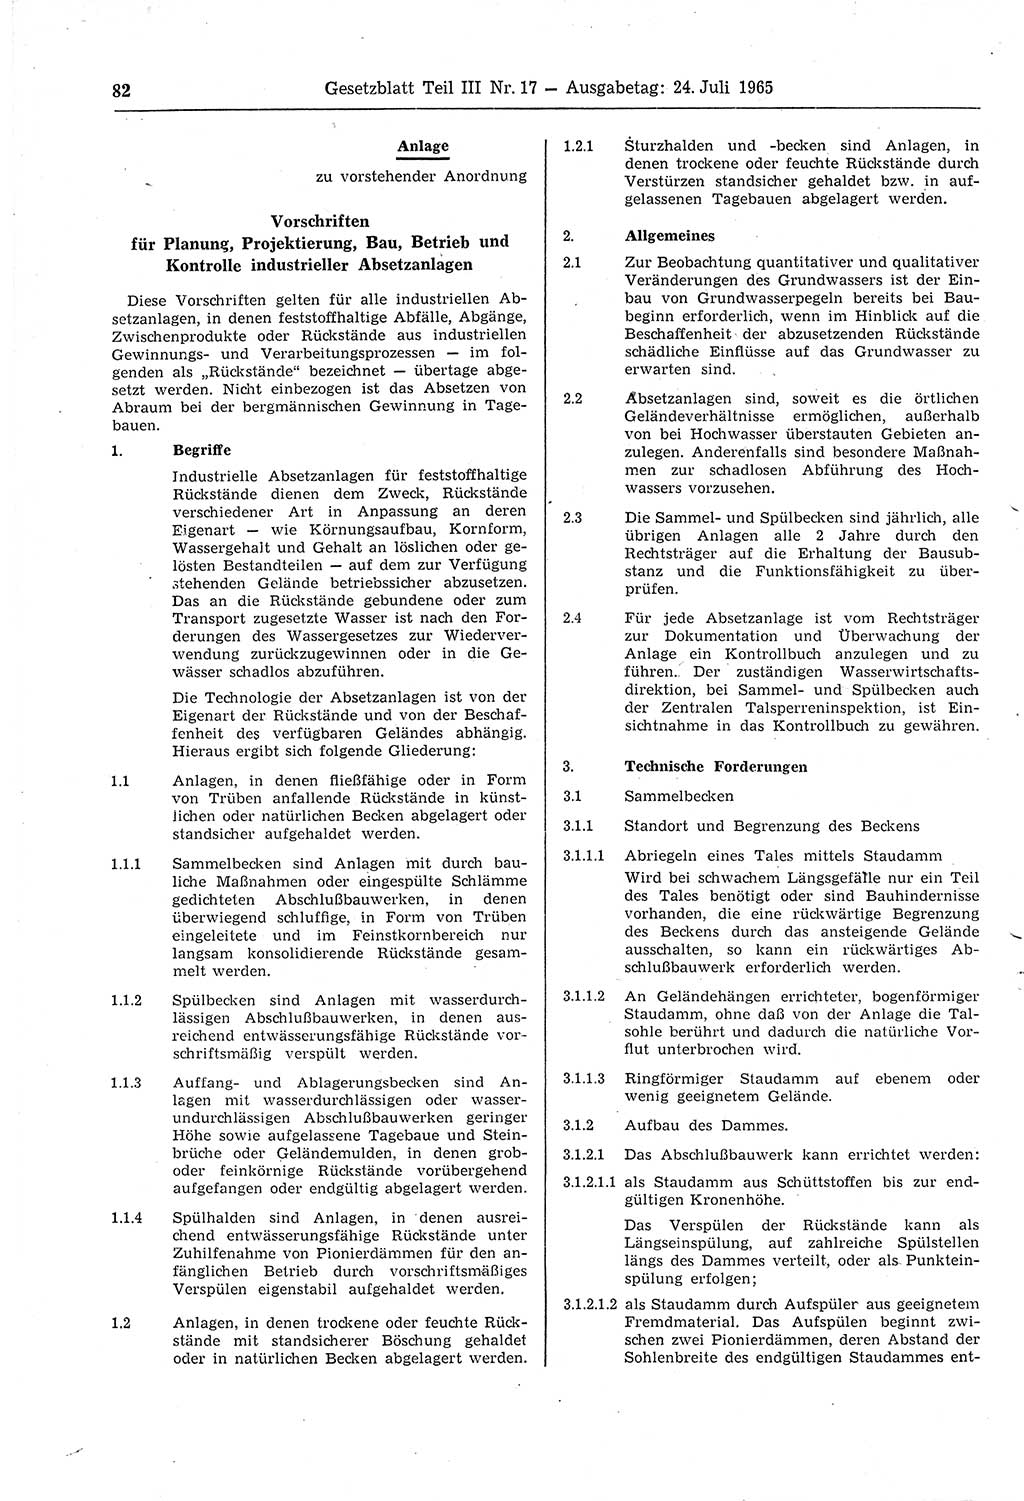 Gesetzblatt (GBl.) der Deutschen Demokratischen Republik (DDR) Teil ⅠⅠⅠ 1965, Seite 82 (GBl. DDR ⅠⅠⅠ 1965, S. 82)